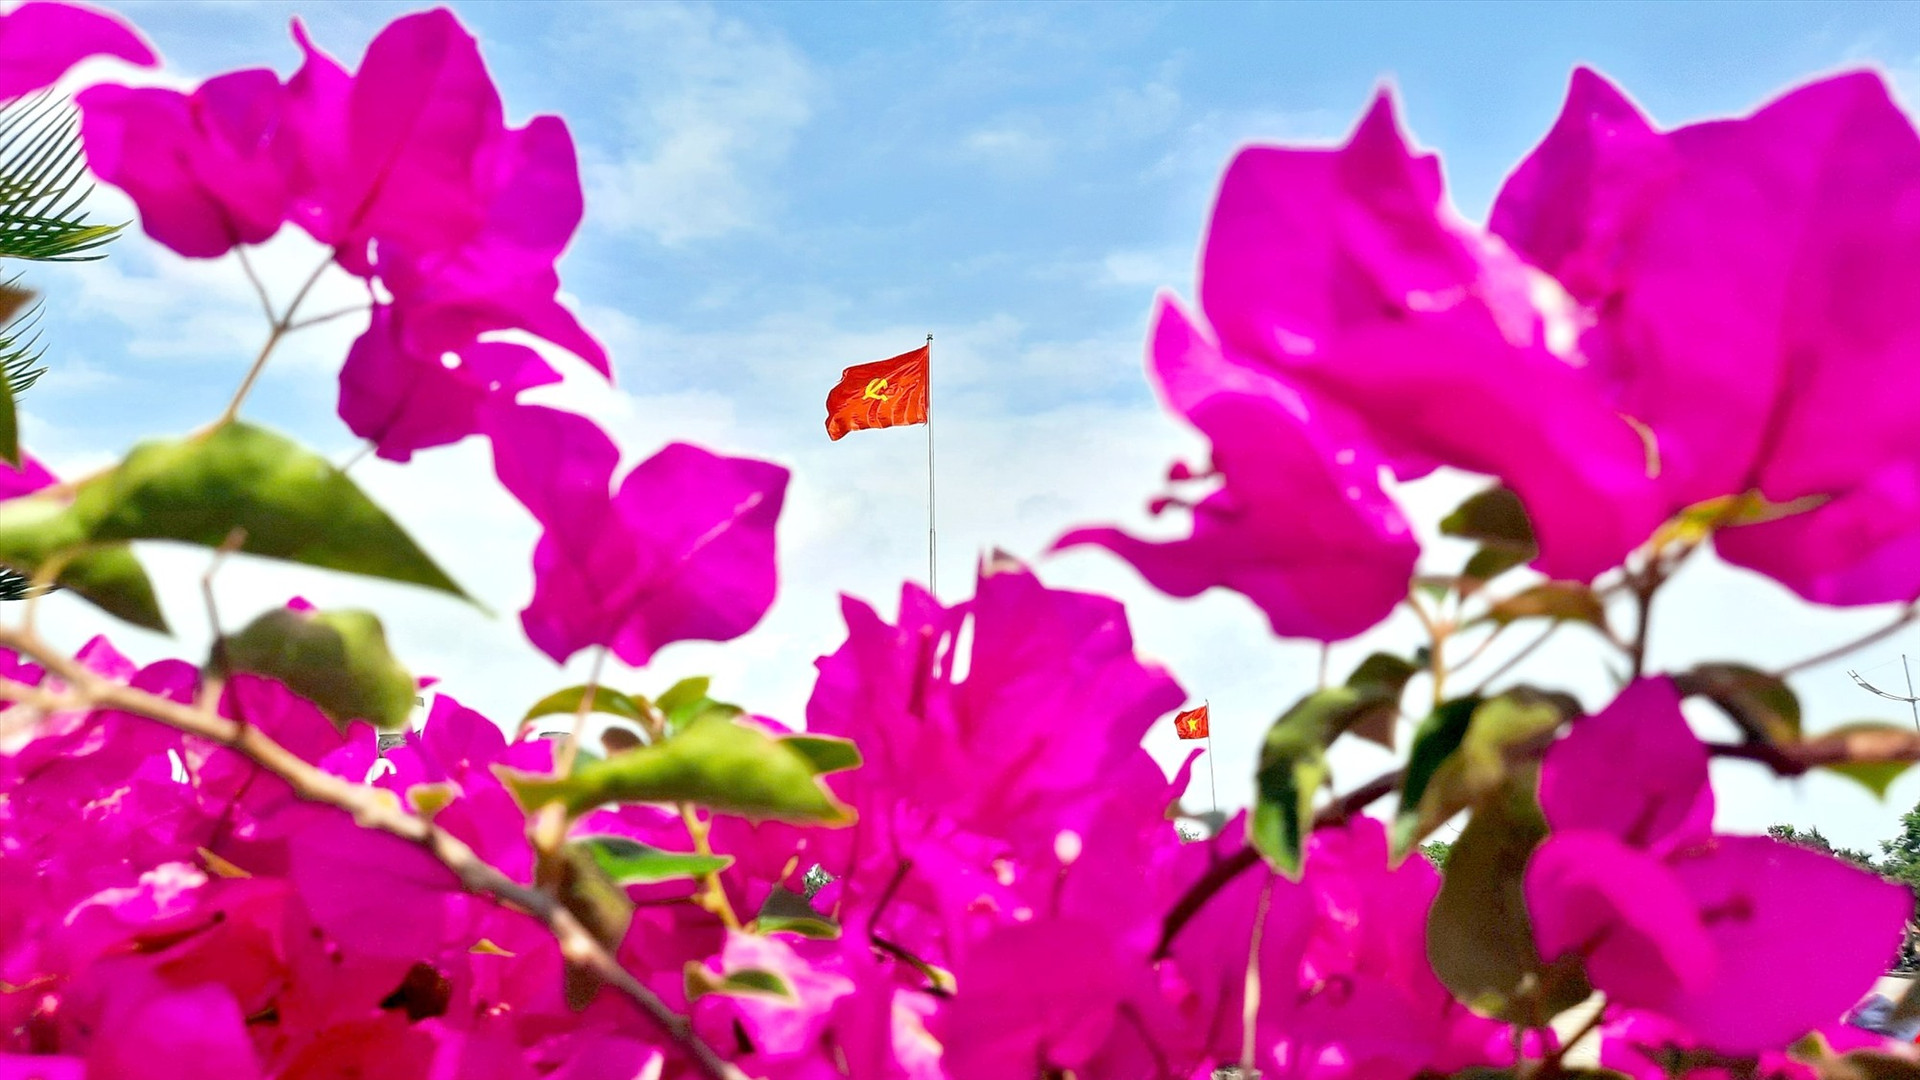 Quần thể Tượng đài Mẹ Việt Nam anh hùng rực rỡ sắc hoa trong dịp lễ 30/4 - 1/5. Ảnh: H.Đ